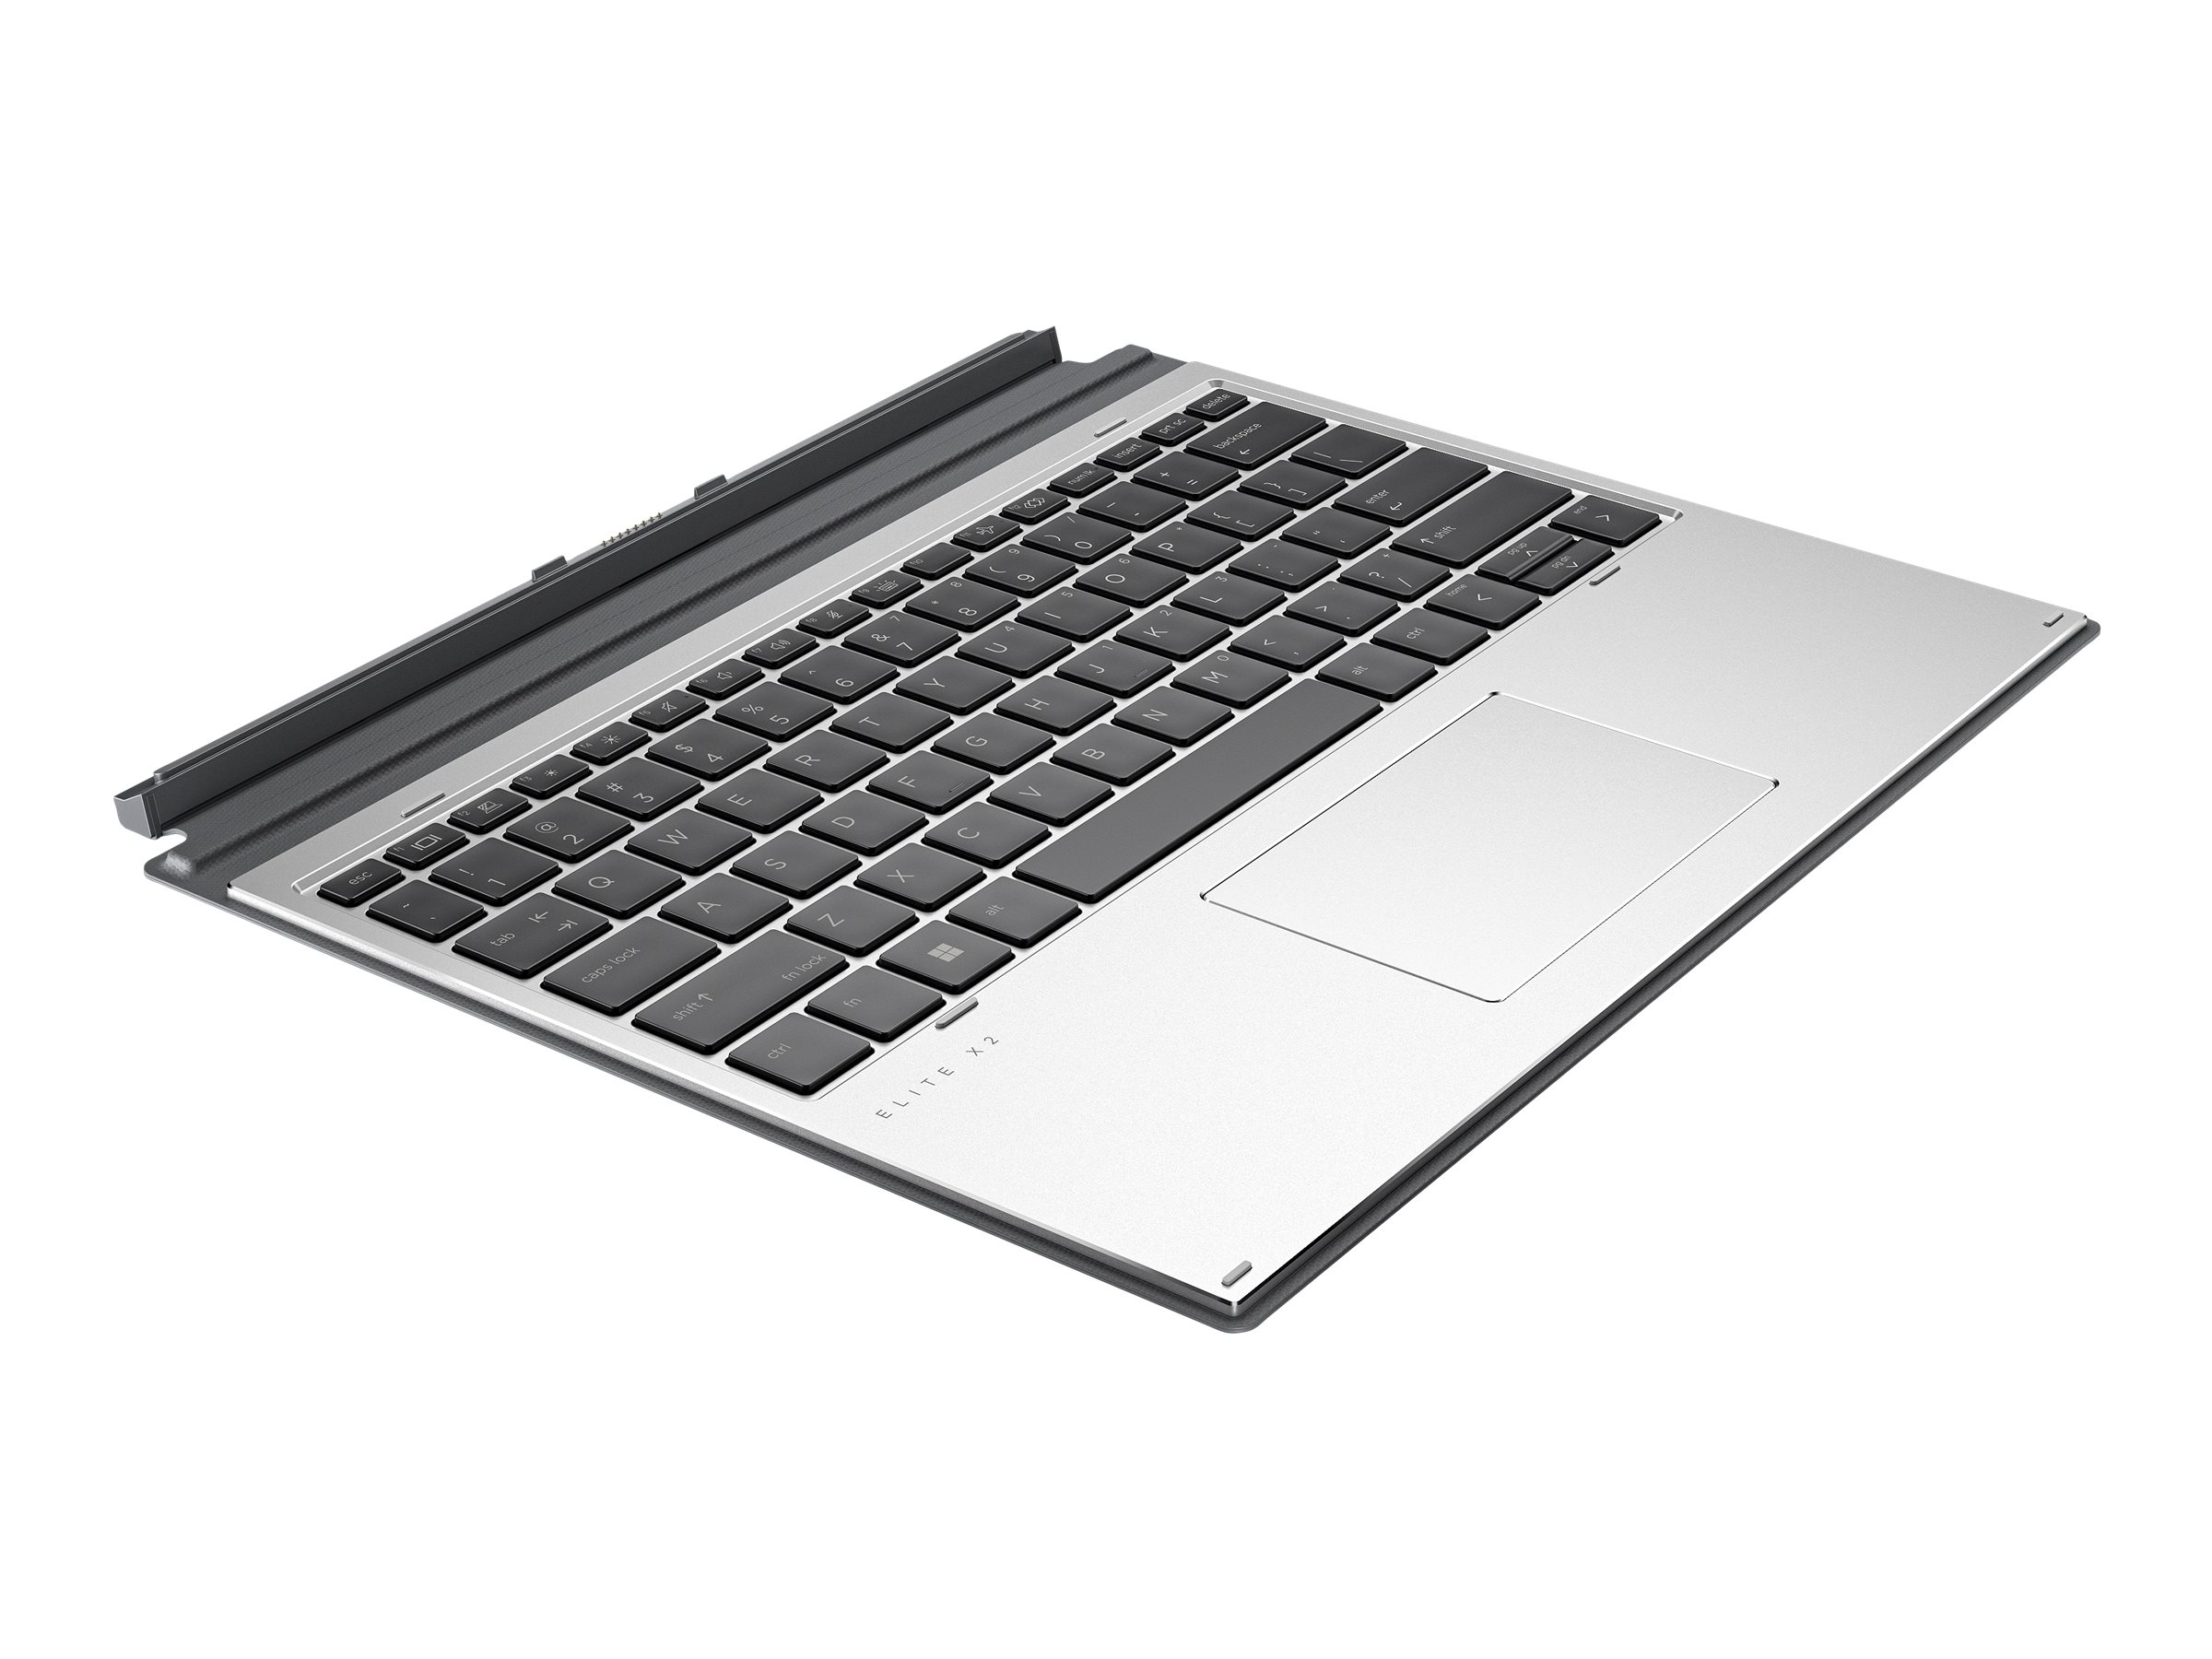 HP Premium - Clavier - avec ClickPad - rétroéclairé - POGO pin - Français - pour Elite x2 G8 - 55G42AA#ABF - Claviers